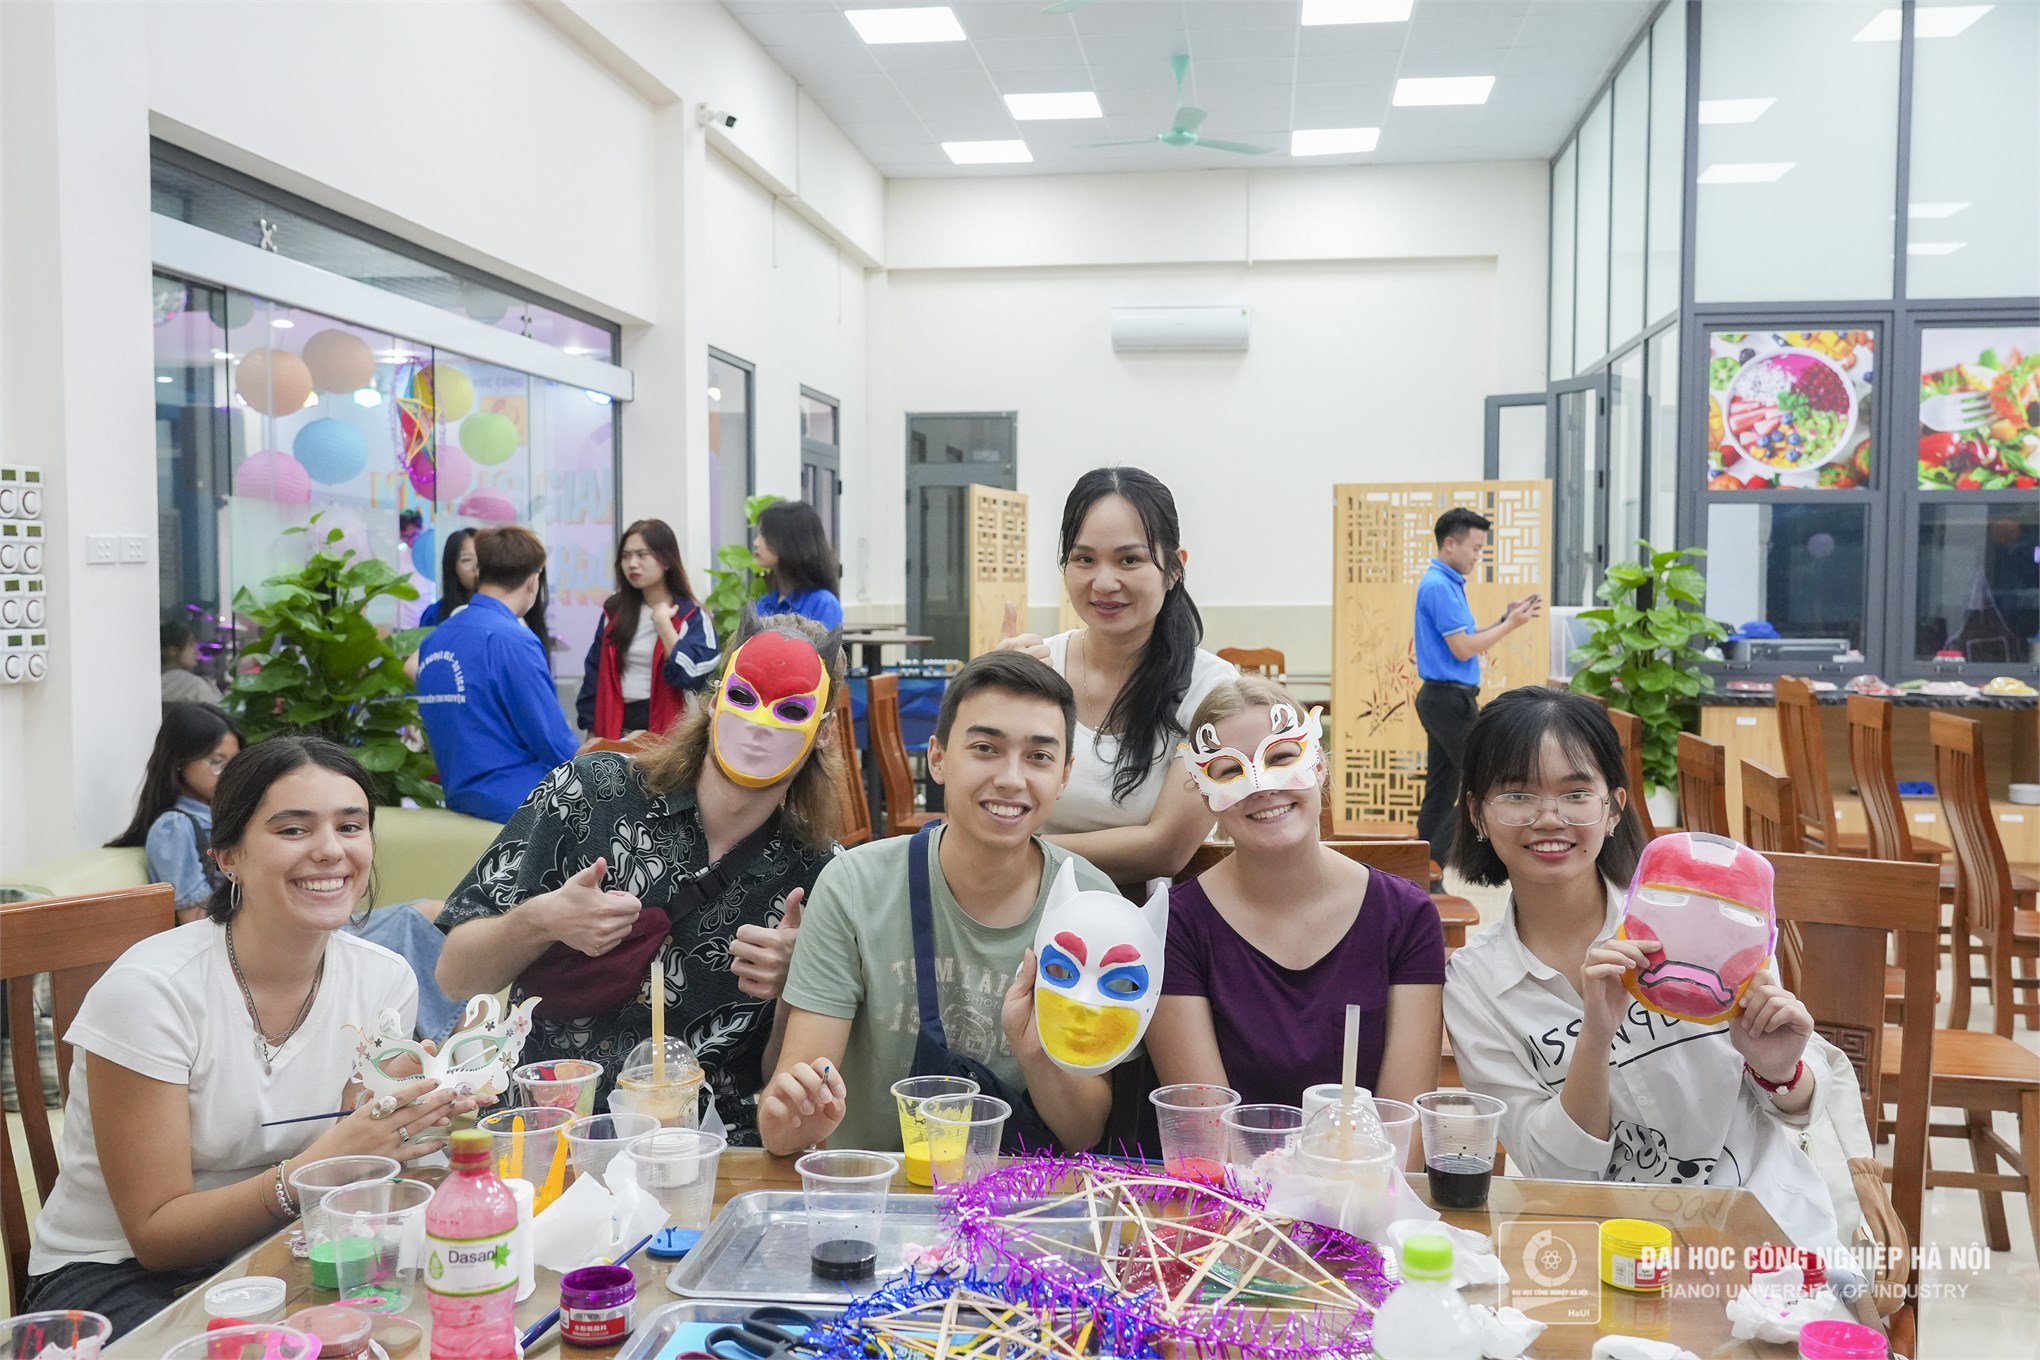 Tổ chức hoạt động trải nghiệm và đón Tết Trung thu cho lưu học sinh, chuyên gia nước ngoài đang làm việc tại Đại học Công nghiệp Hà Nội